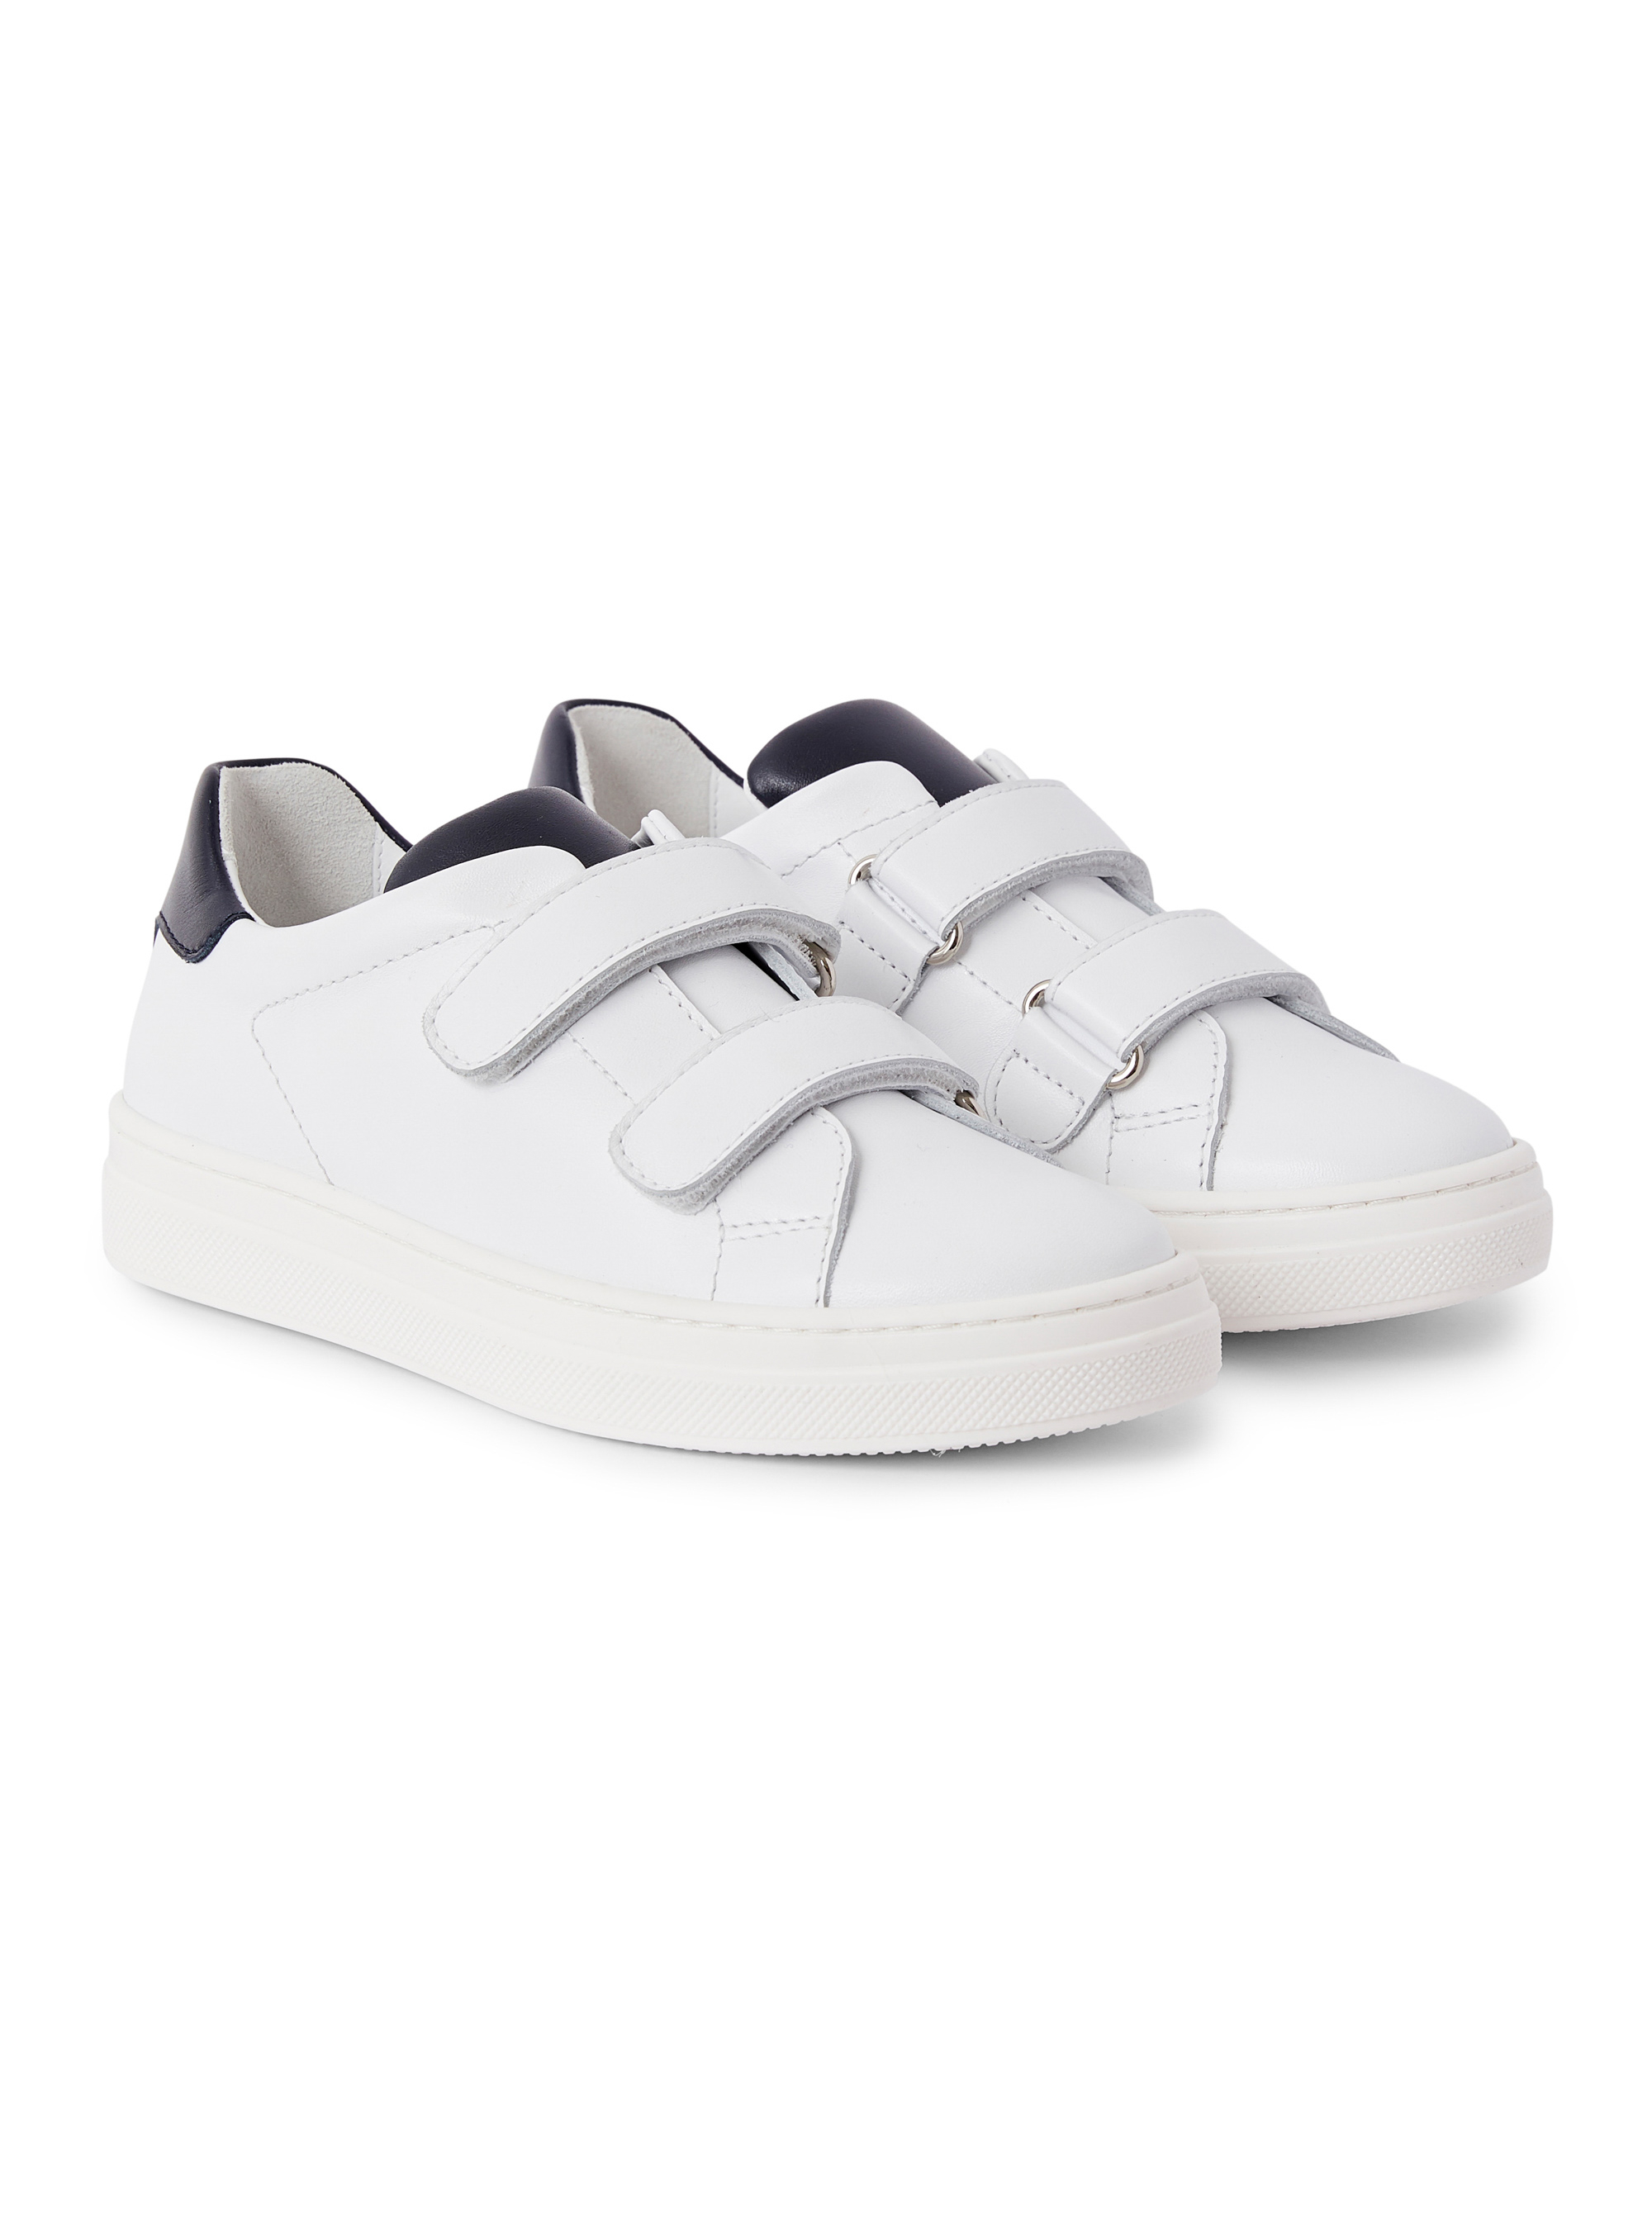 Sneakers en cuir blanc et bleu - Chaussures - Il Gufo